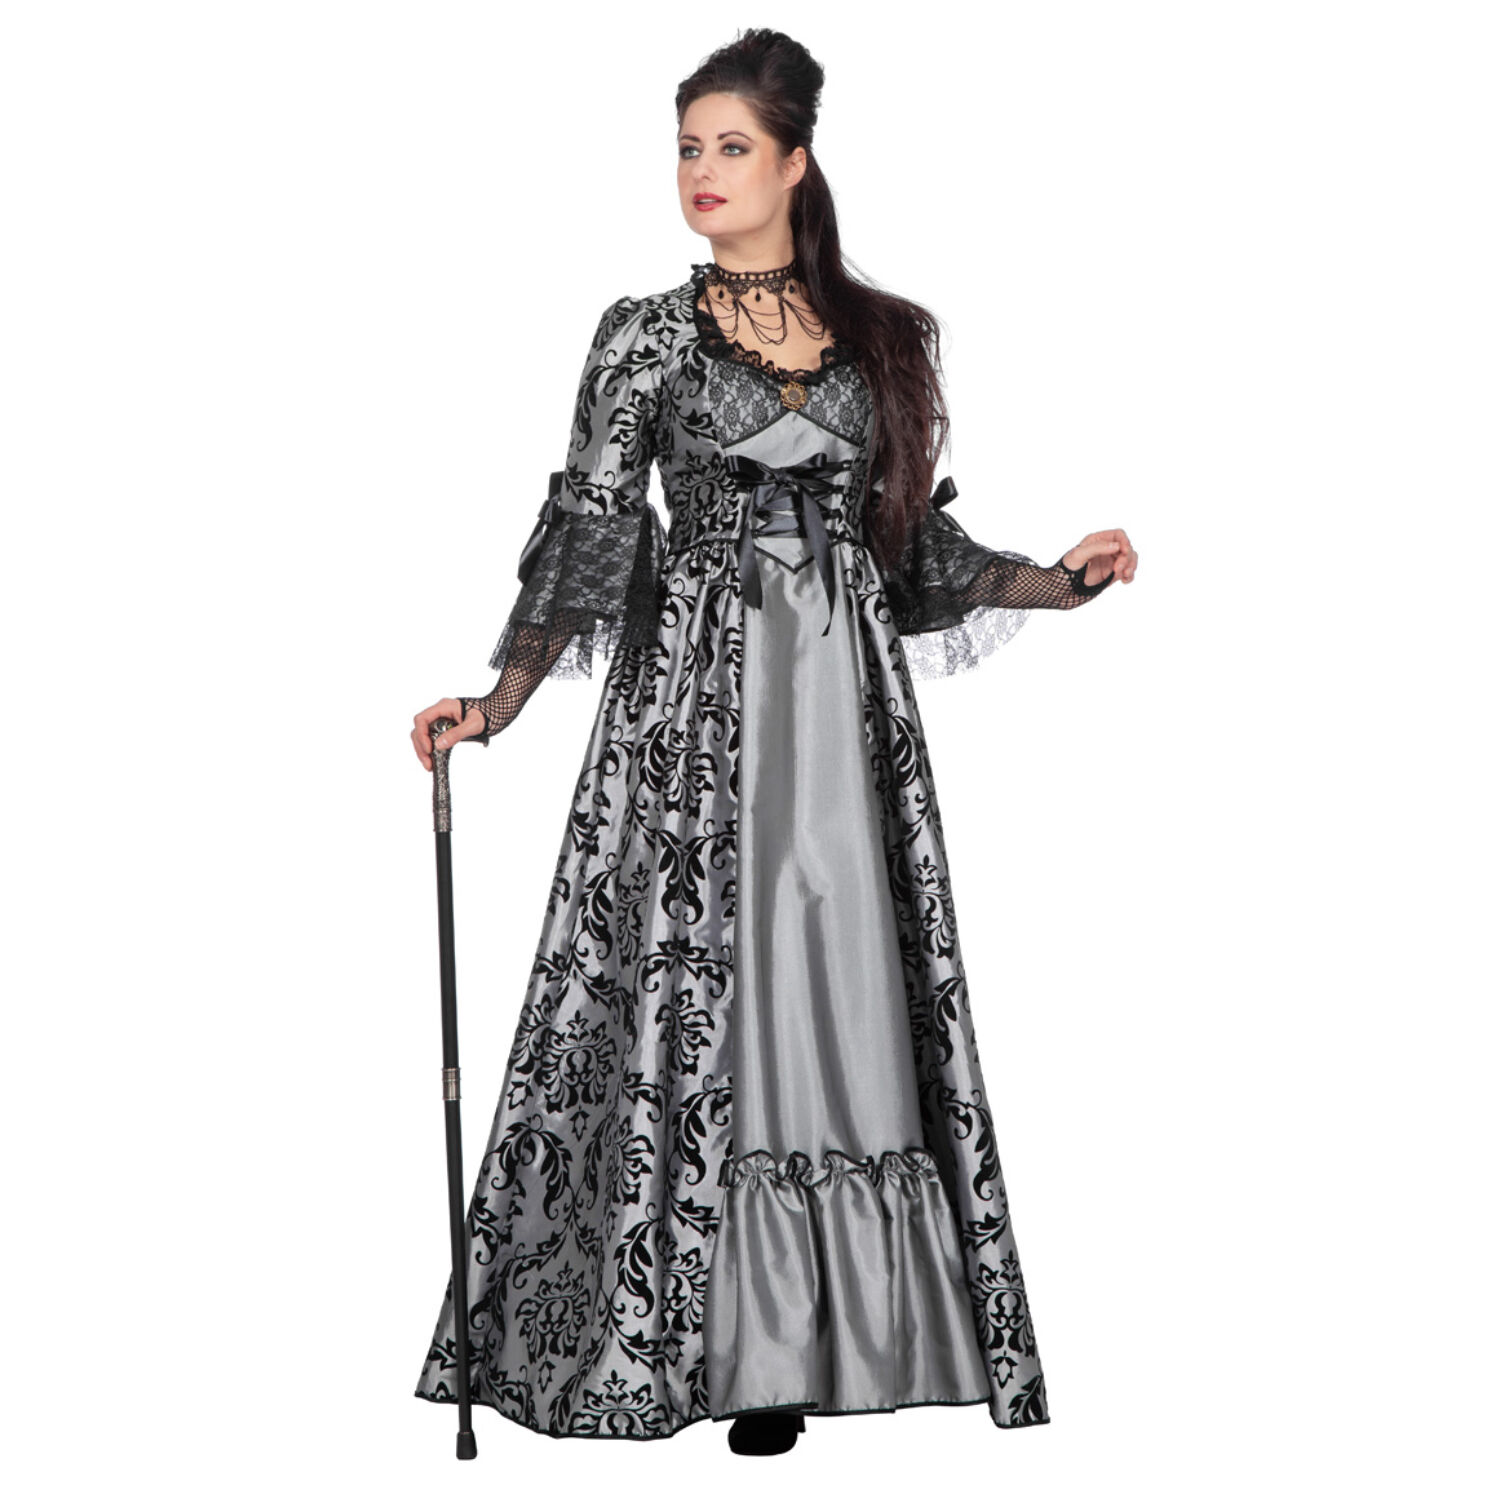 NEU Damen-Kostm Luxus Kleid Marquise, Gr. 36